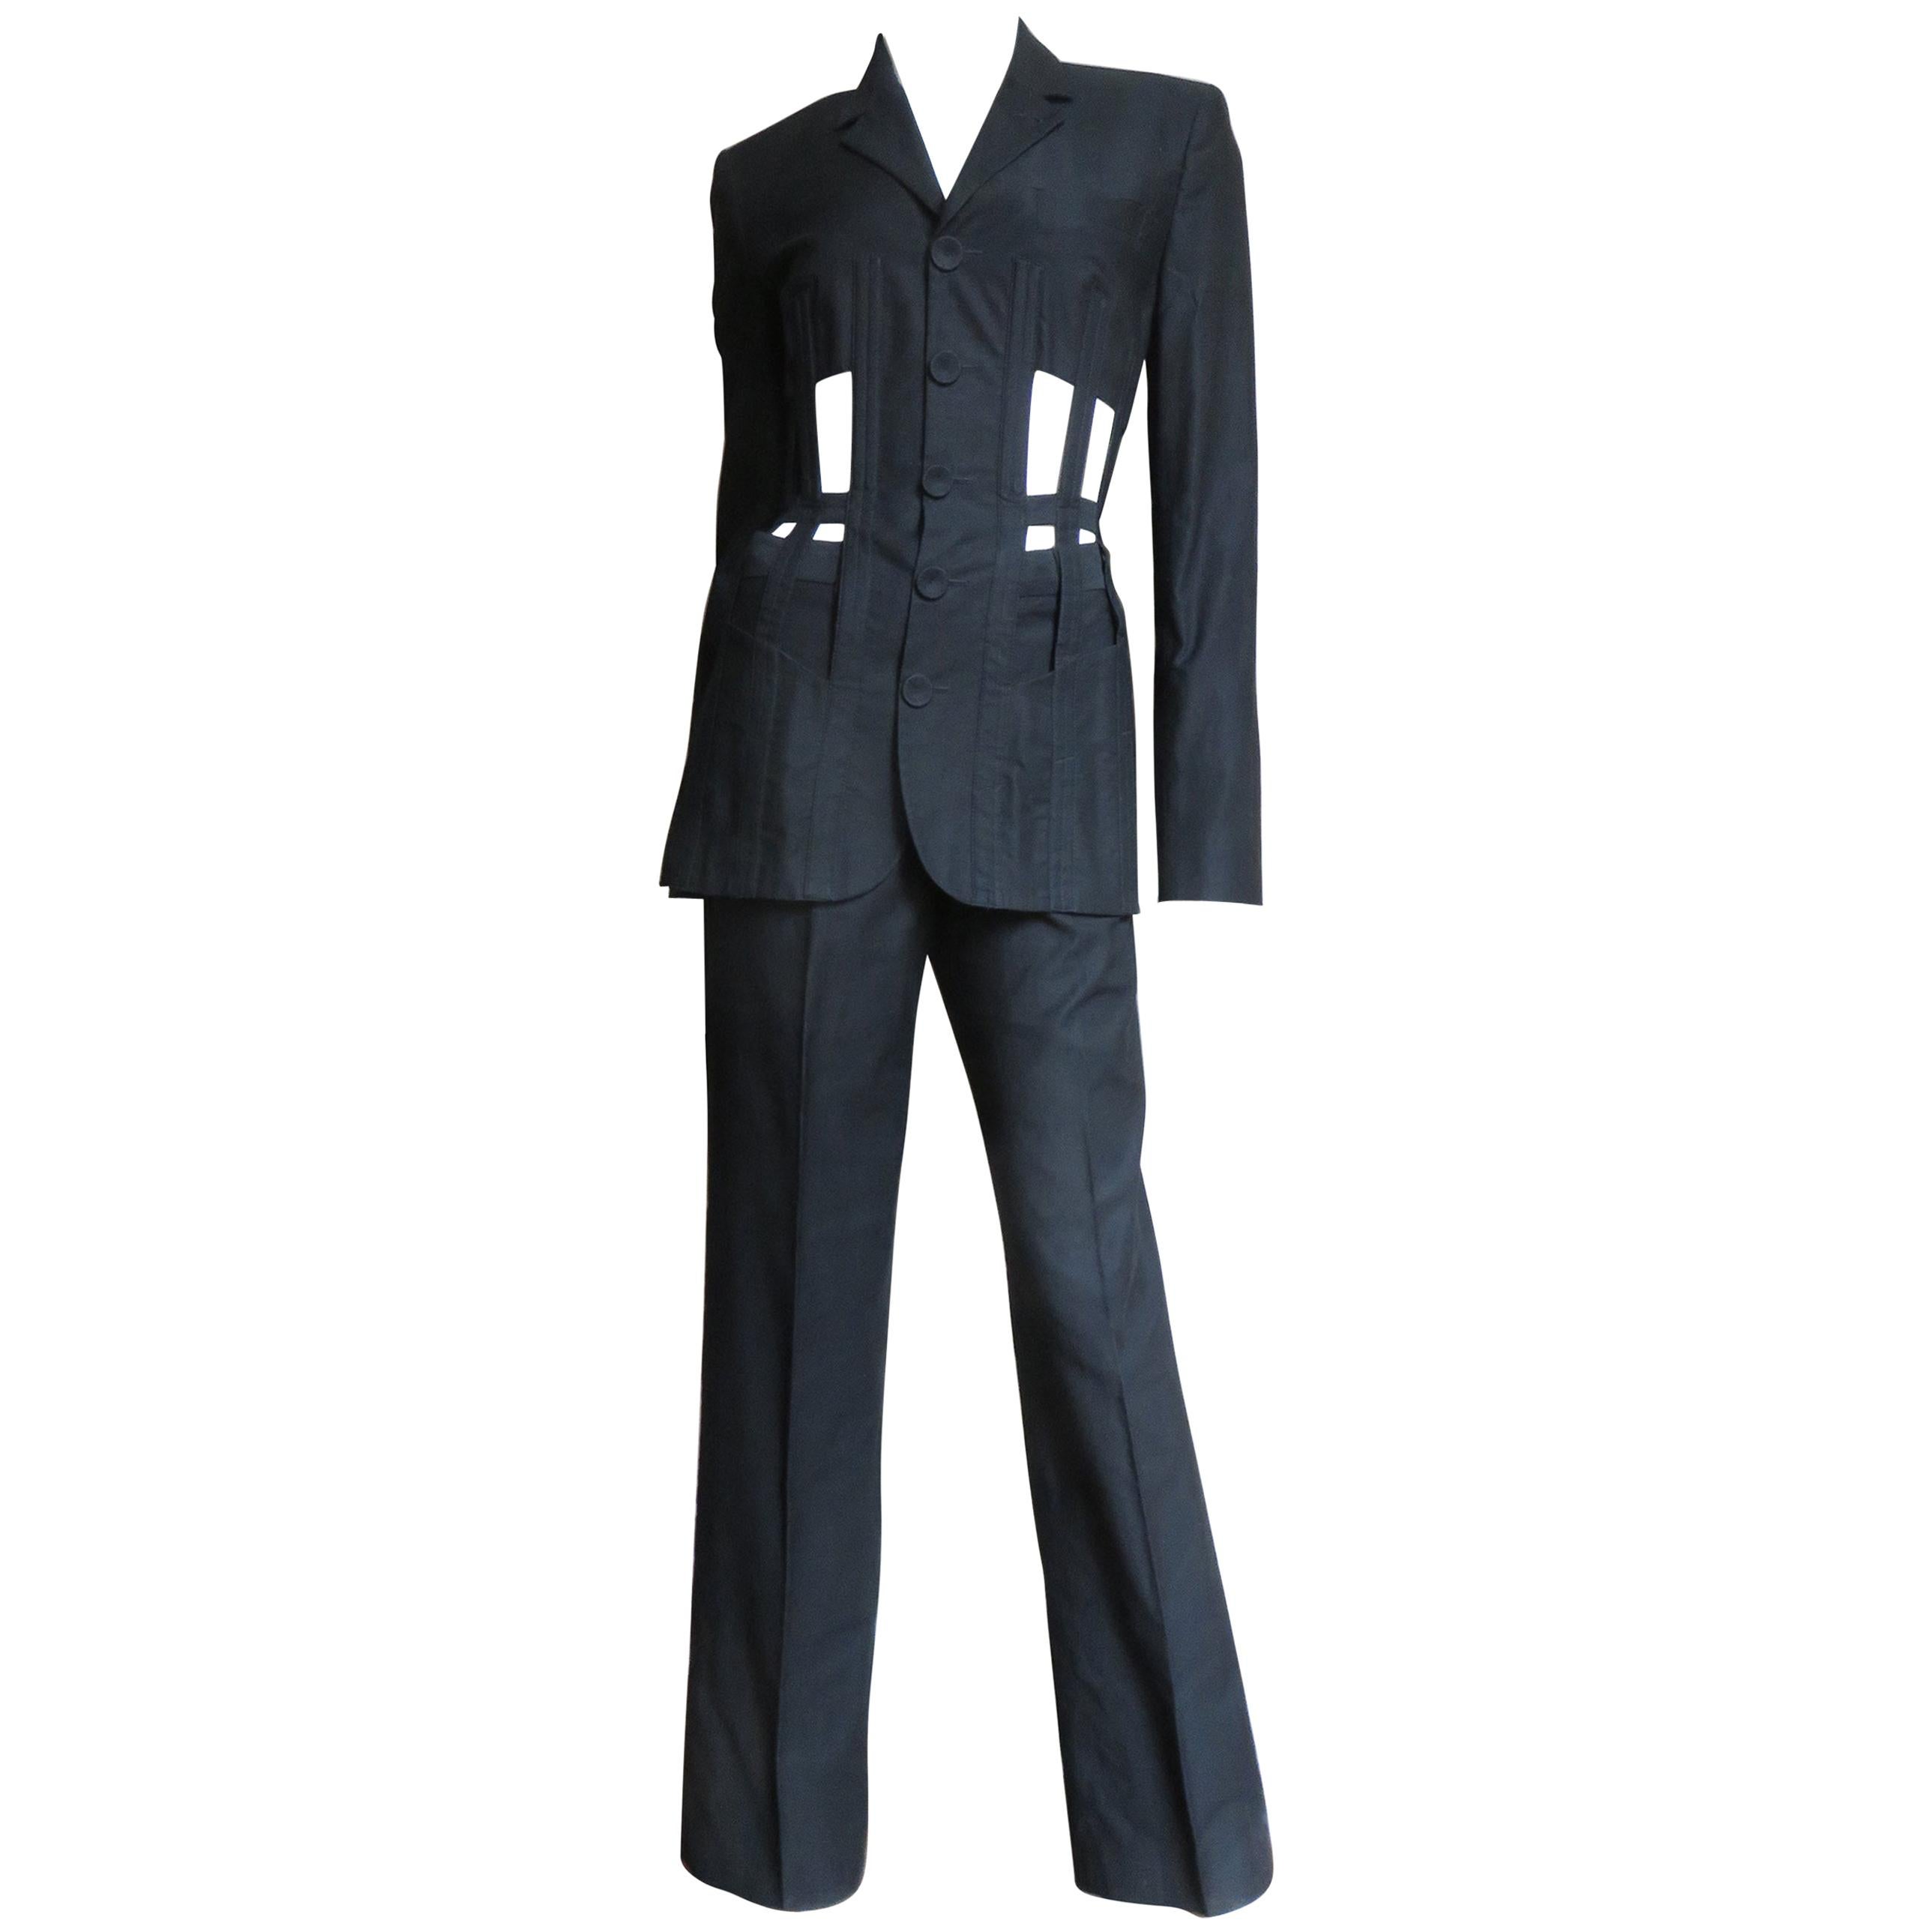 Jean Paul Gaultier Cage Corset Jacket Pant Suit S/S 1989